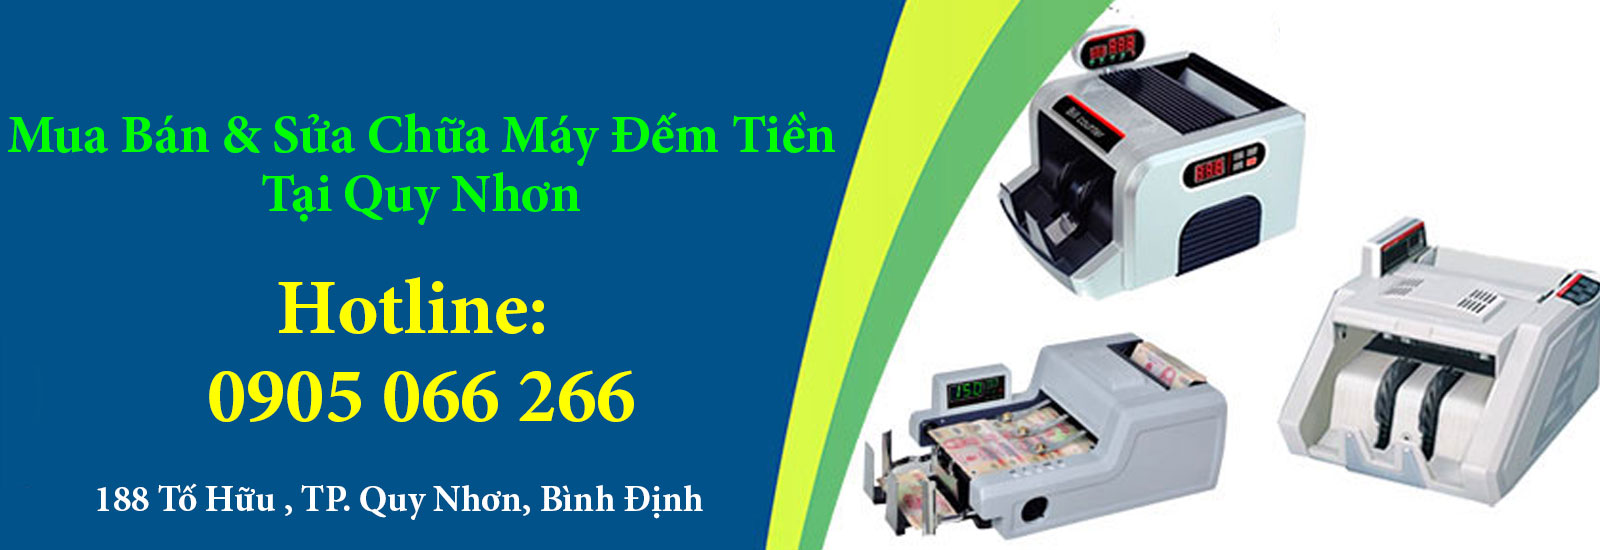 Cho thuê máy đếm tiền tại Quy Nhơn-0905 066 266